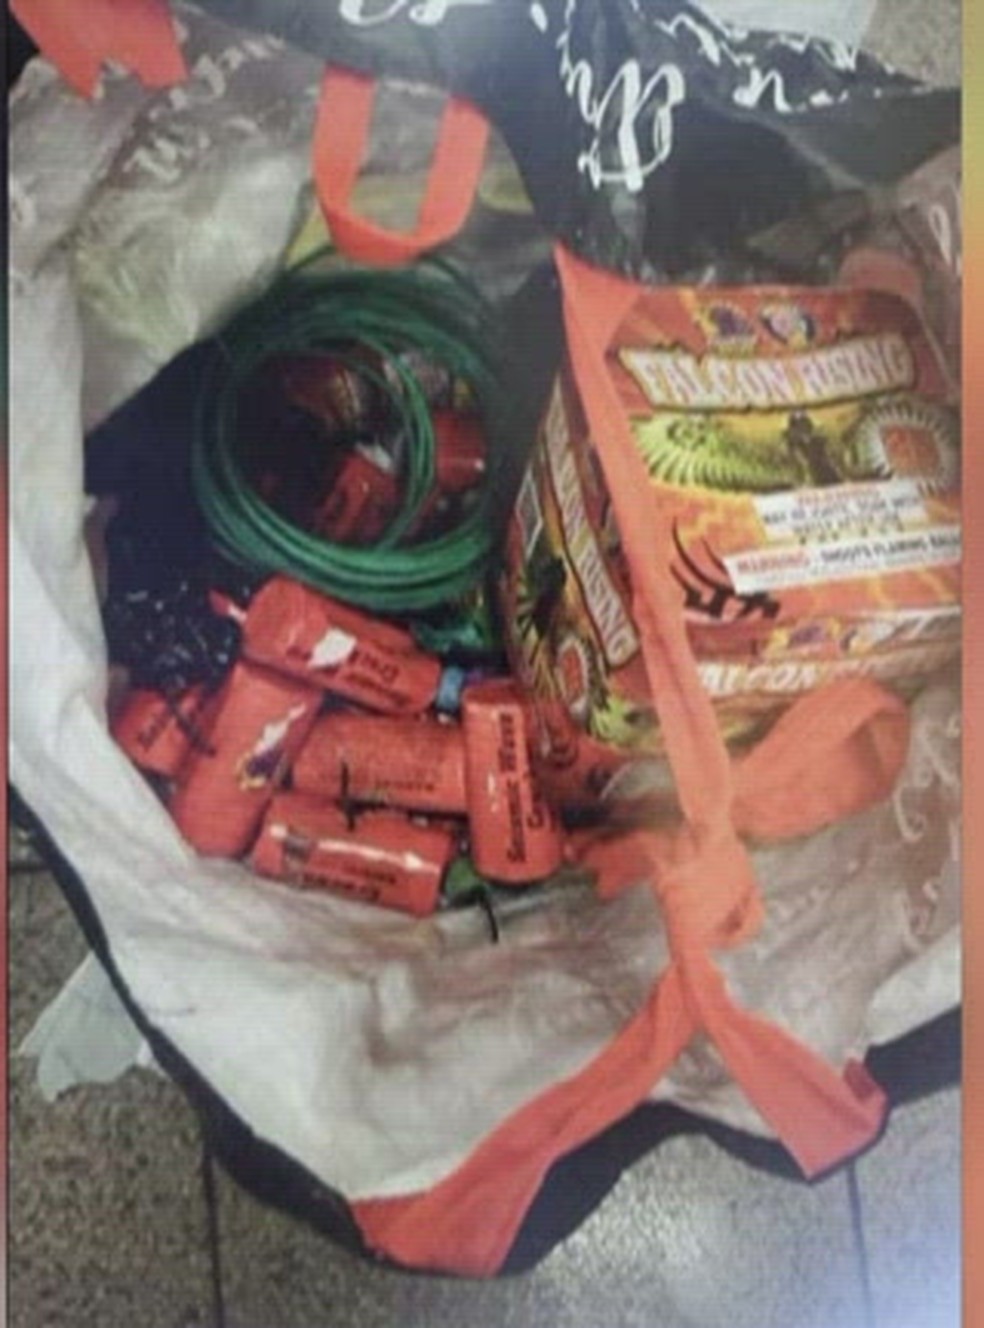 Bolsa com fogos de artifício e bomba de fumaça foi encontrada no local do tiroteio em Nova York em 12 de abril de 2022 — Foto: Reprodução/WCBN via NBC